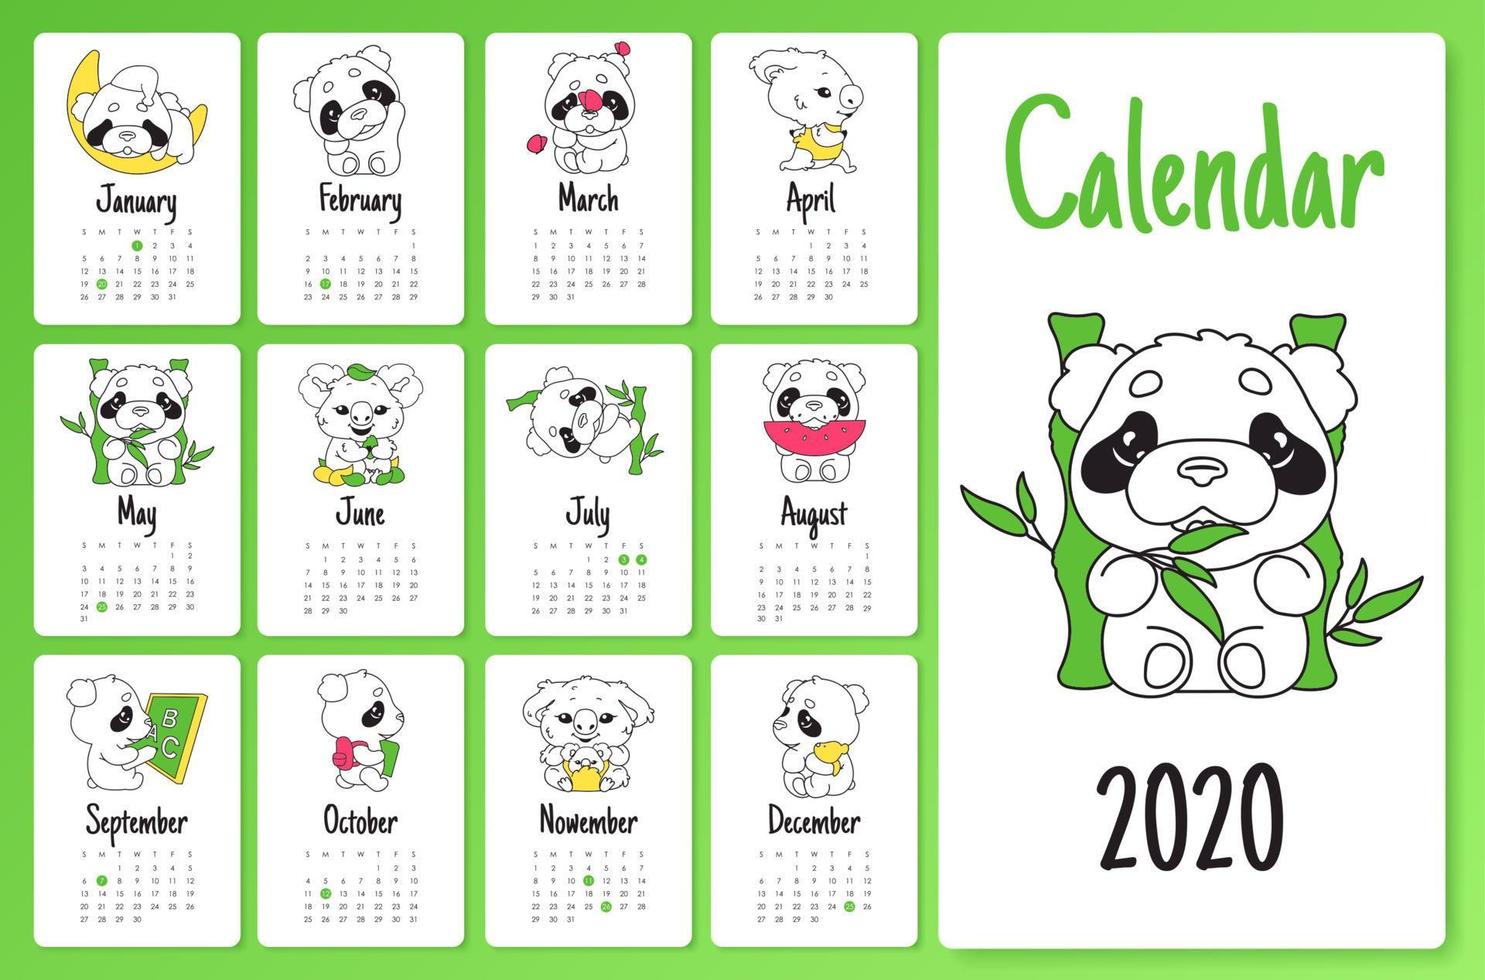 süße Faultier und Panda 2020 Kalenderdesignvorlage mit kawaii Zeichentrickfiguren. Wandposter, Kalender-Layout-Paket für kreative Seiten. kindisches, mädchenhaftes Monatsplanermodell mit Gekritzelvektortieren vektor